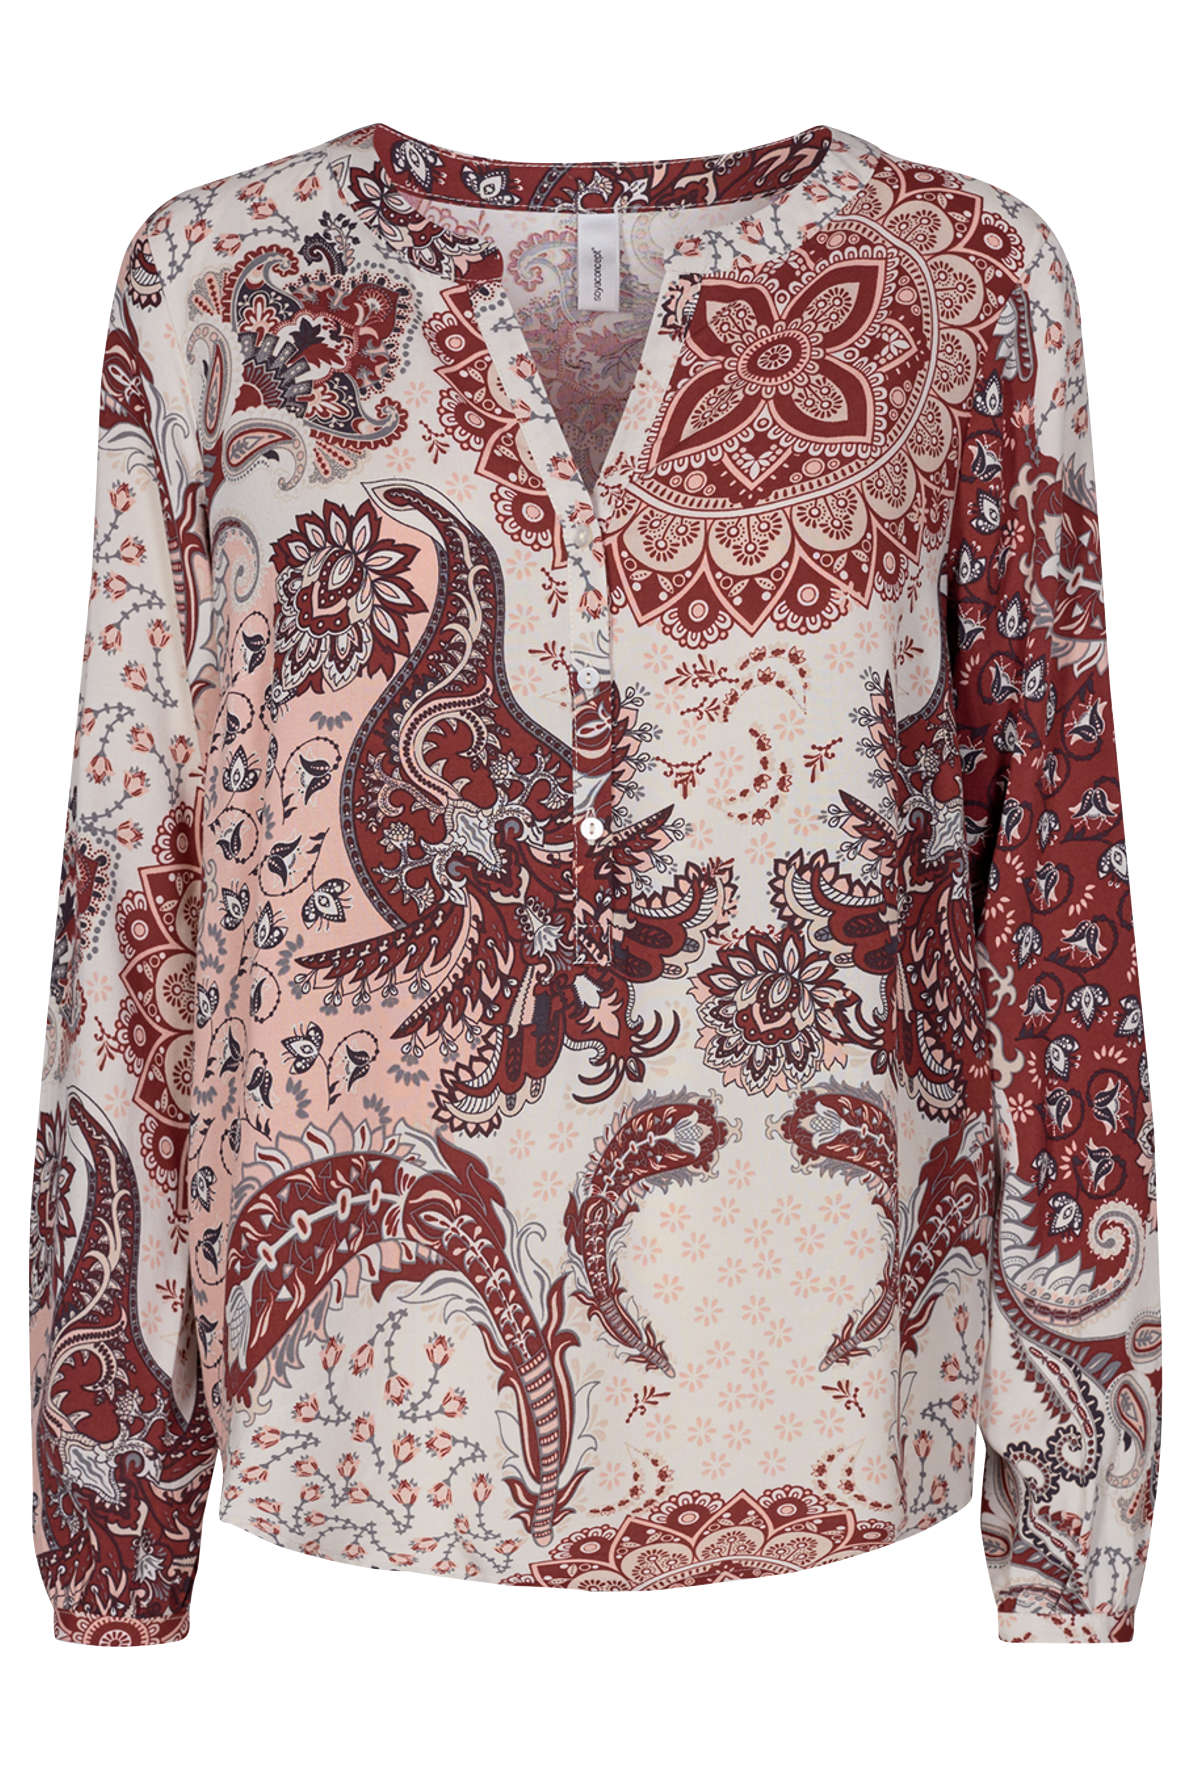 Sc-Kiana bluse med print - flere farver - til damer - Hos